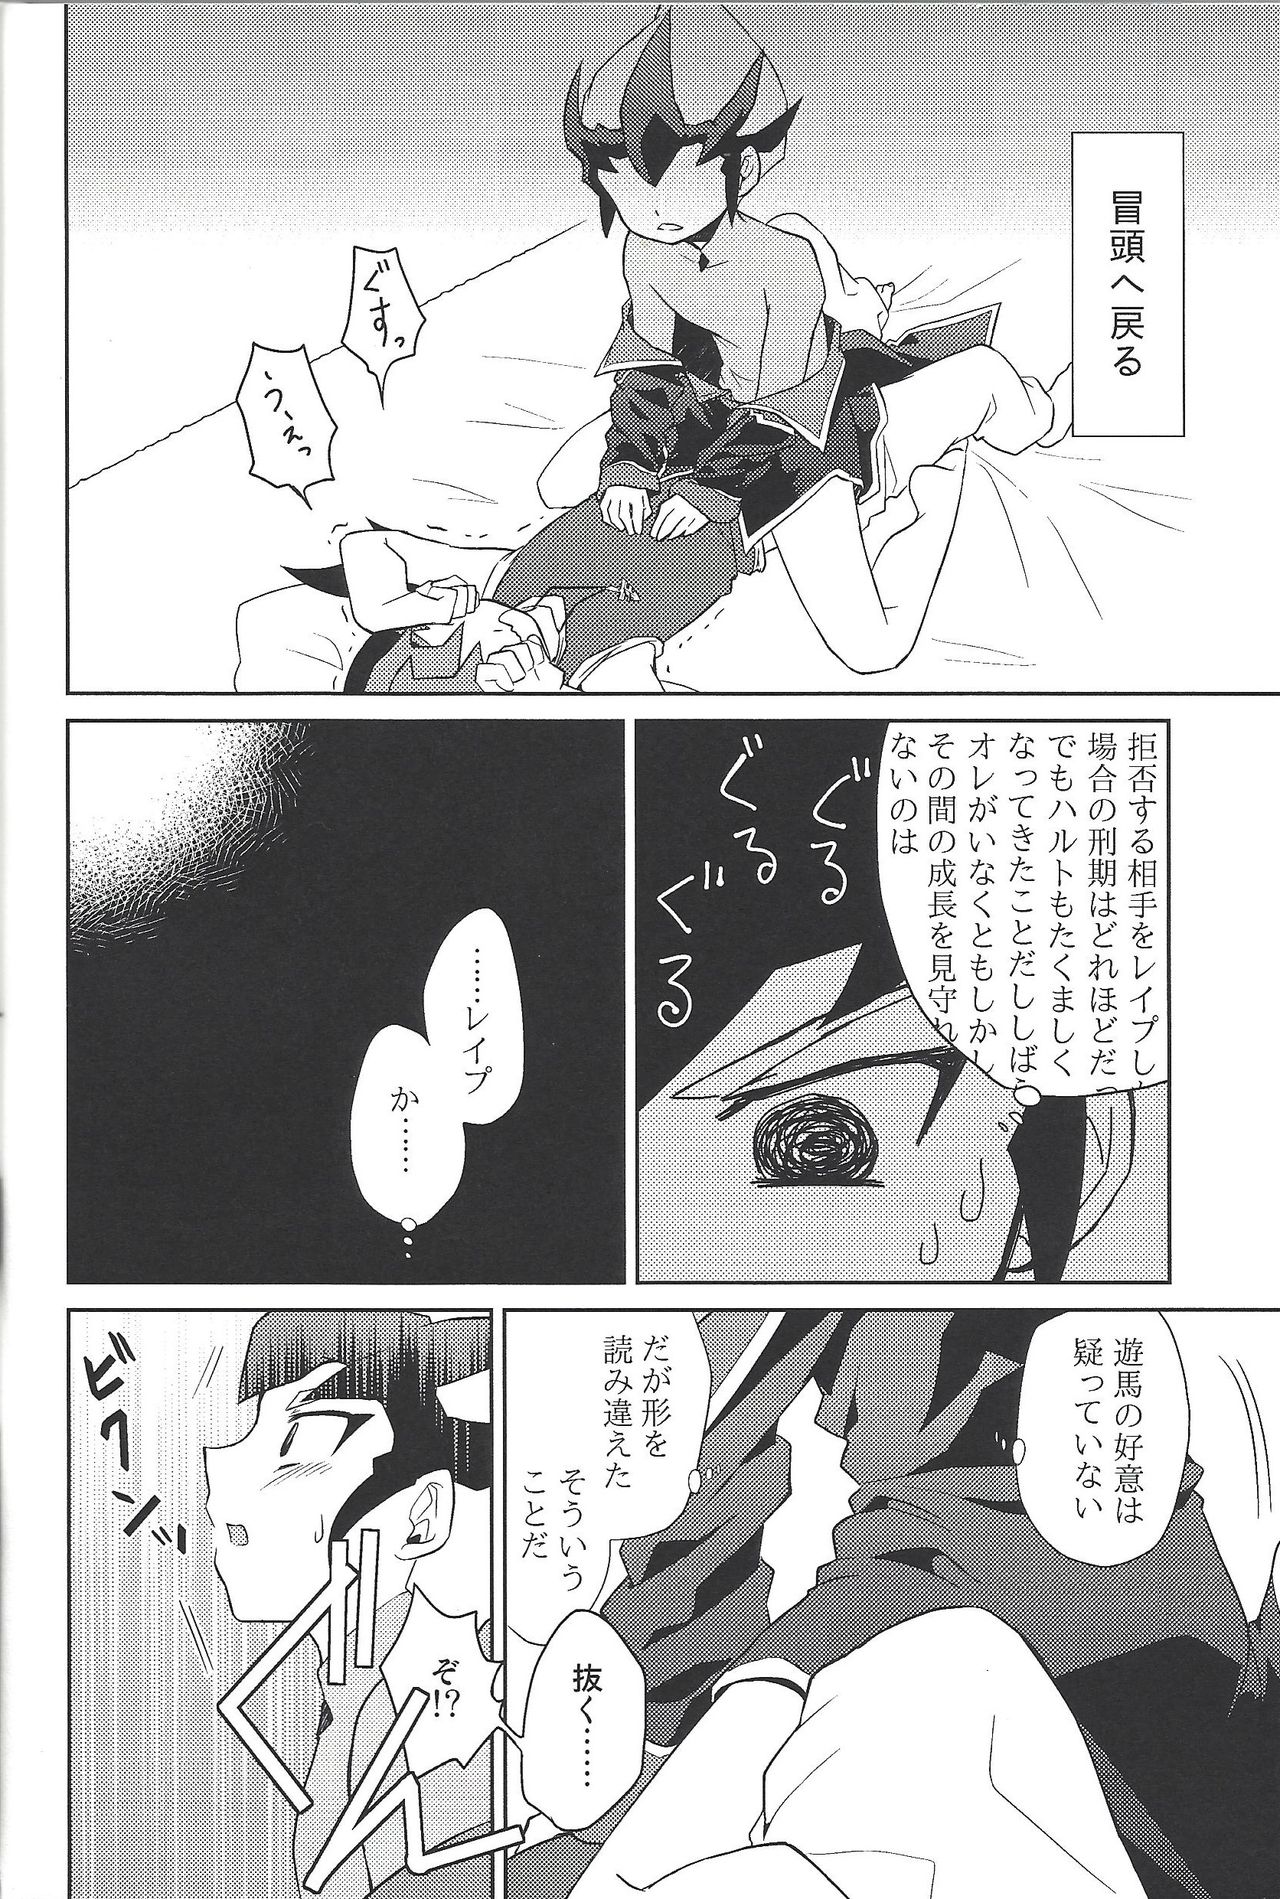 (Sennan Battle Phase 13) [G-da (kyugen)] 384400 Km-saki no hana o taoru (Yu-Gi-Oh! ZEXAL) page 21 full